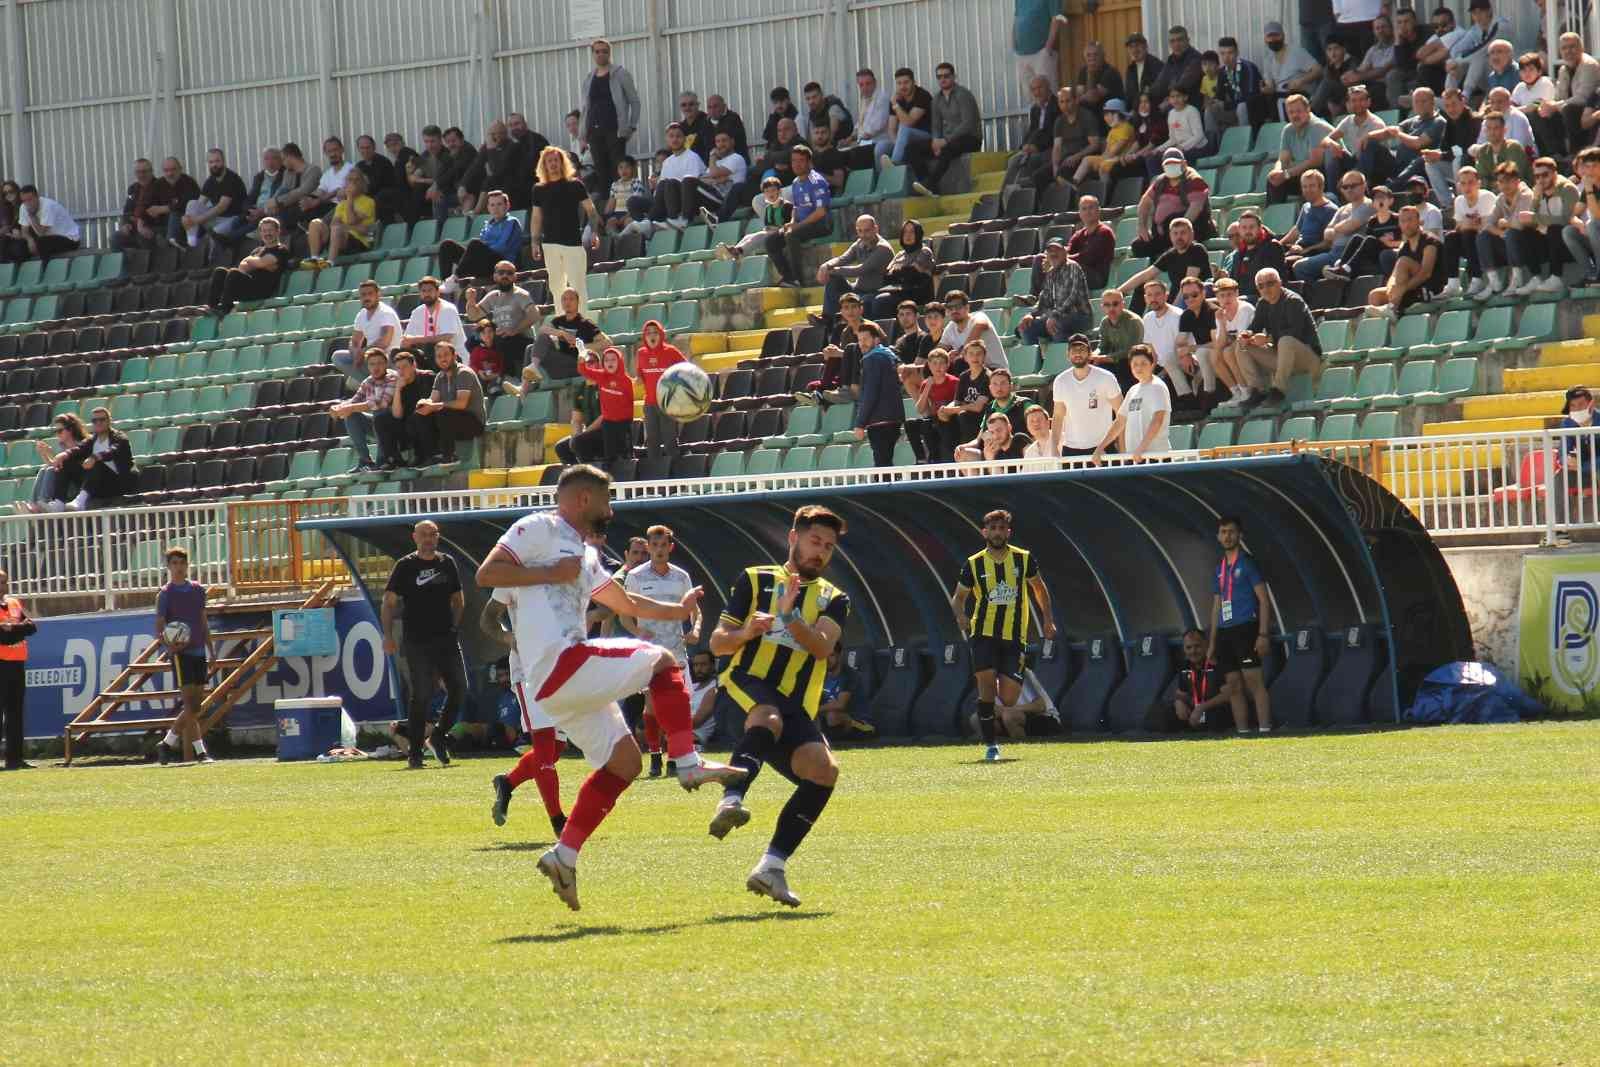 TFF 3. Lig 3. Grup’ta play-off mücadelesi veren Belediye Derincespor 30. hafta karşılaşmasında Çankaya Futbol Kulübü’nü 1-0 mağlup etti. Stat ...